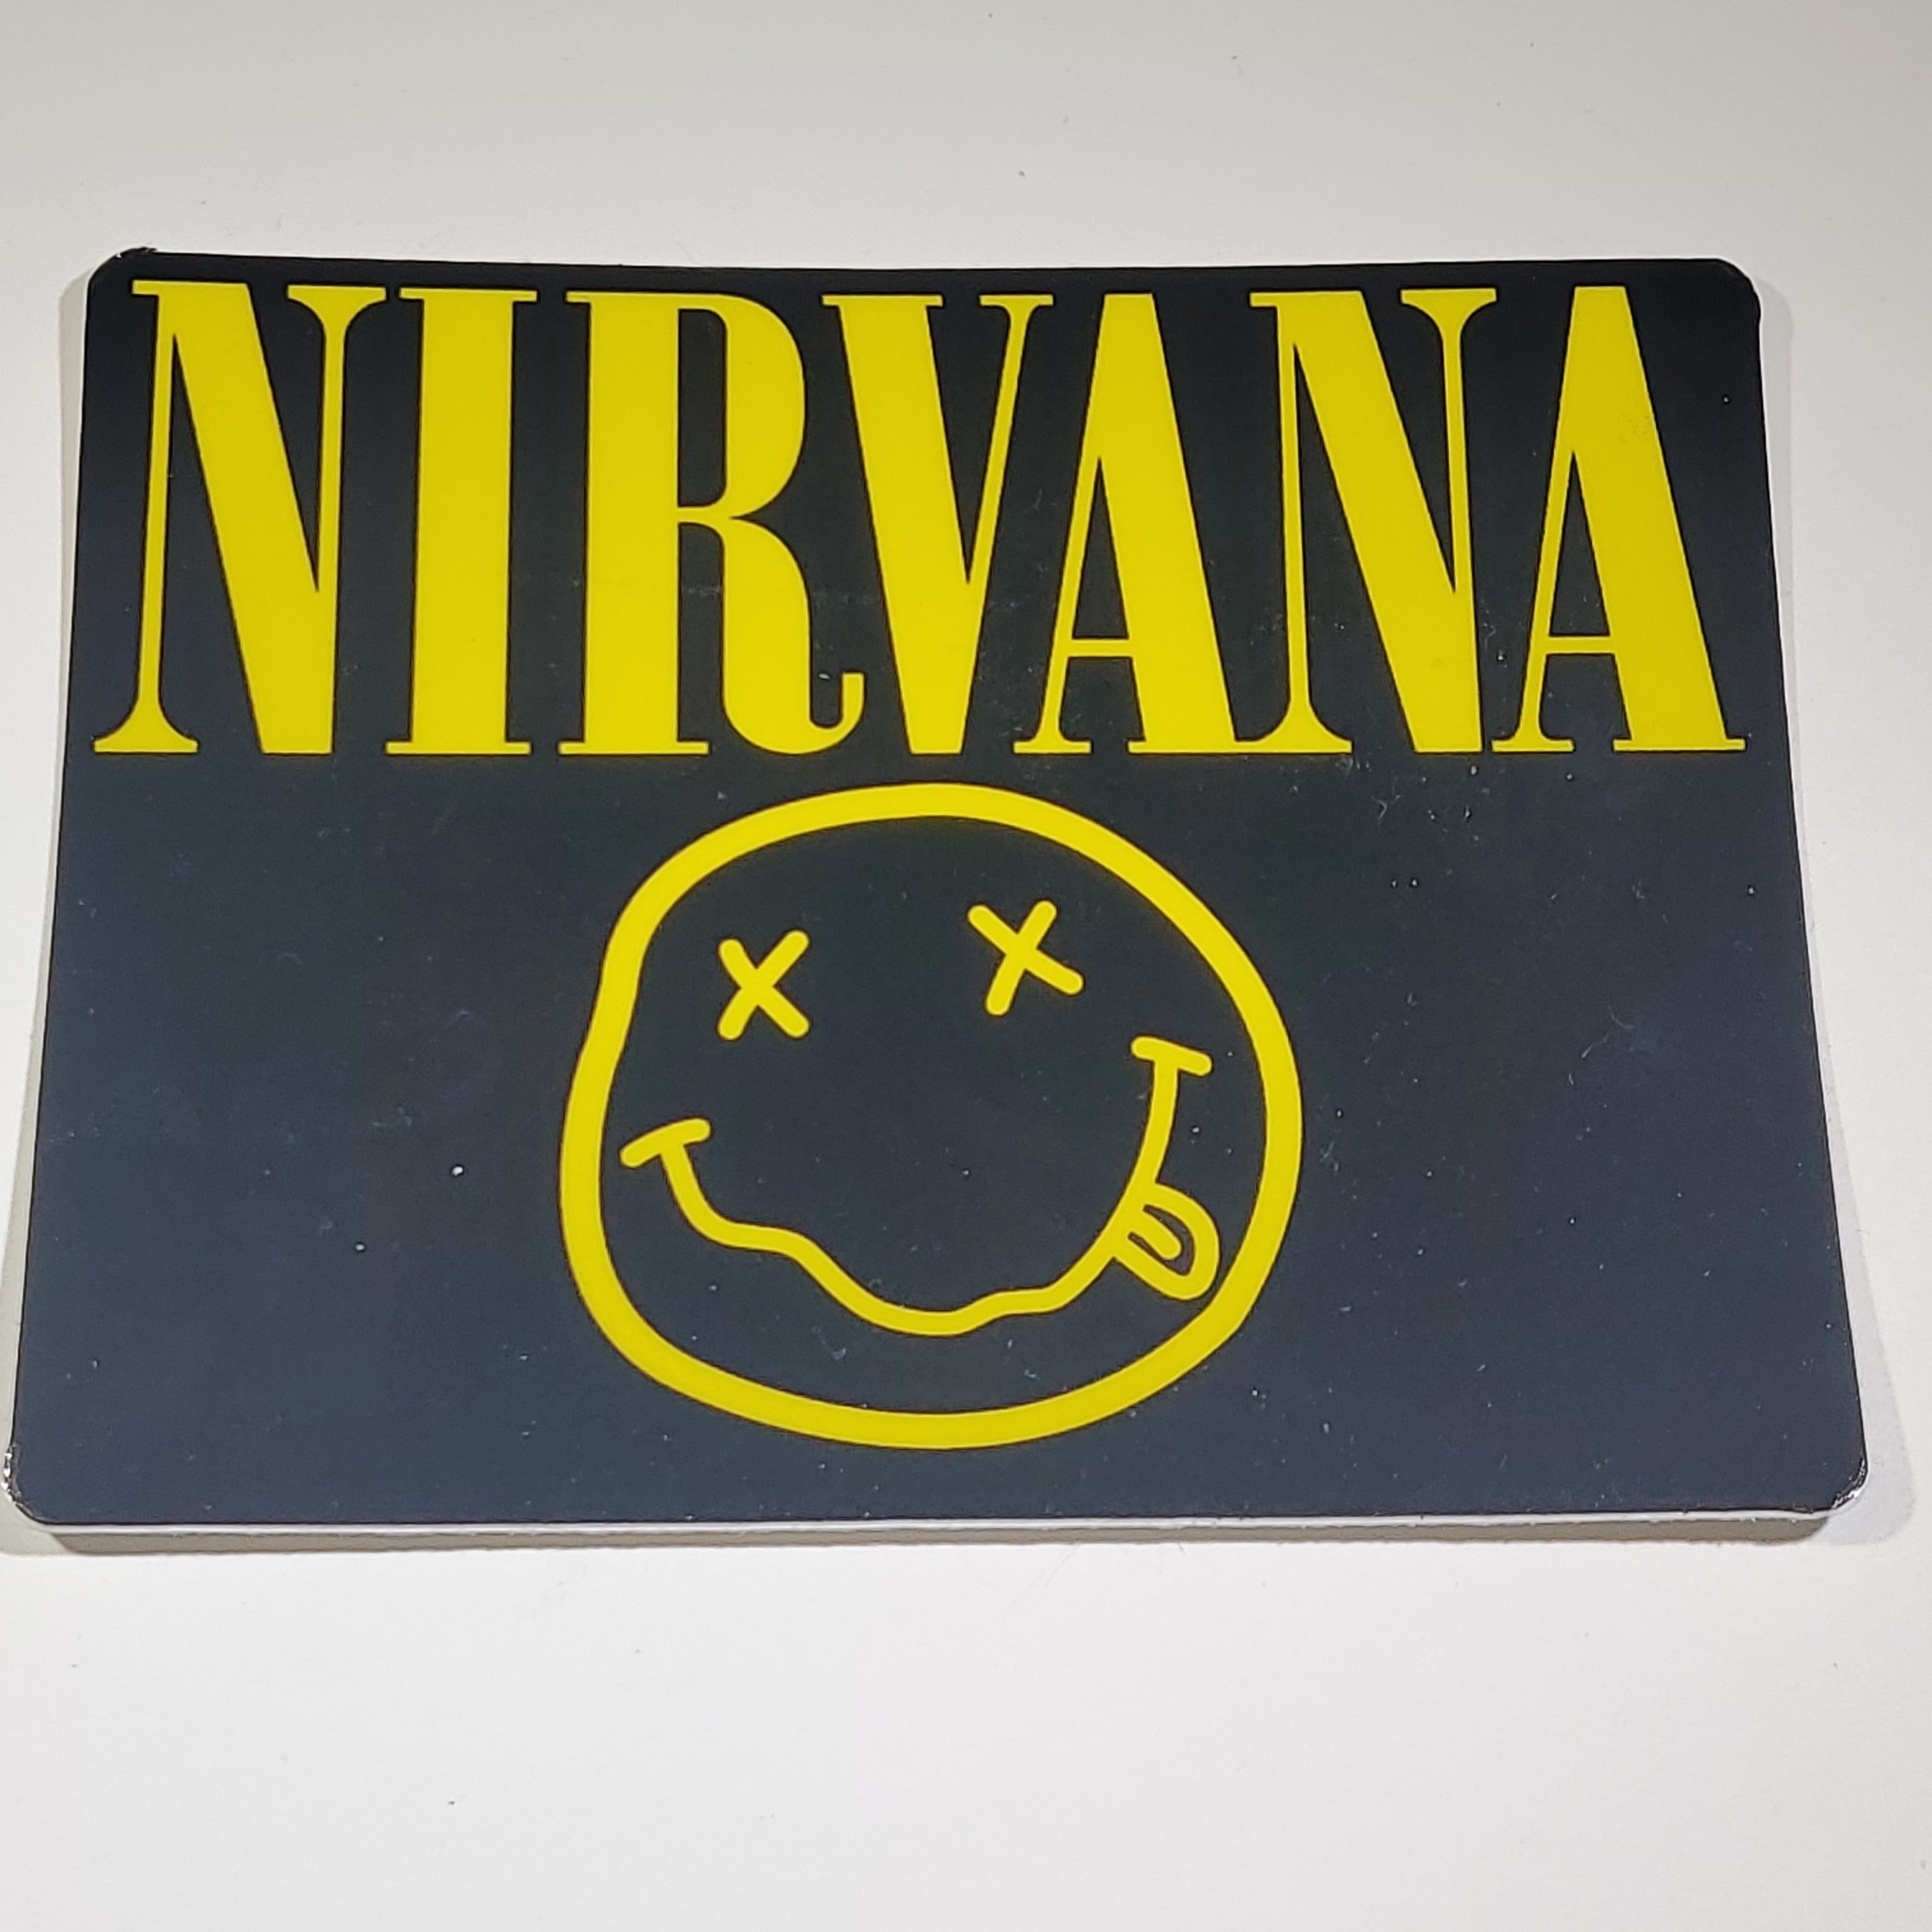 Sticker Nirvana Smiley Logo-hotRAGS.com